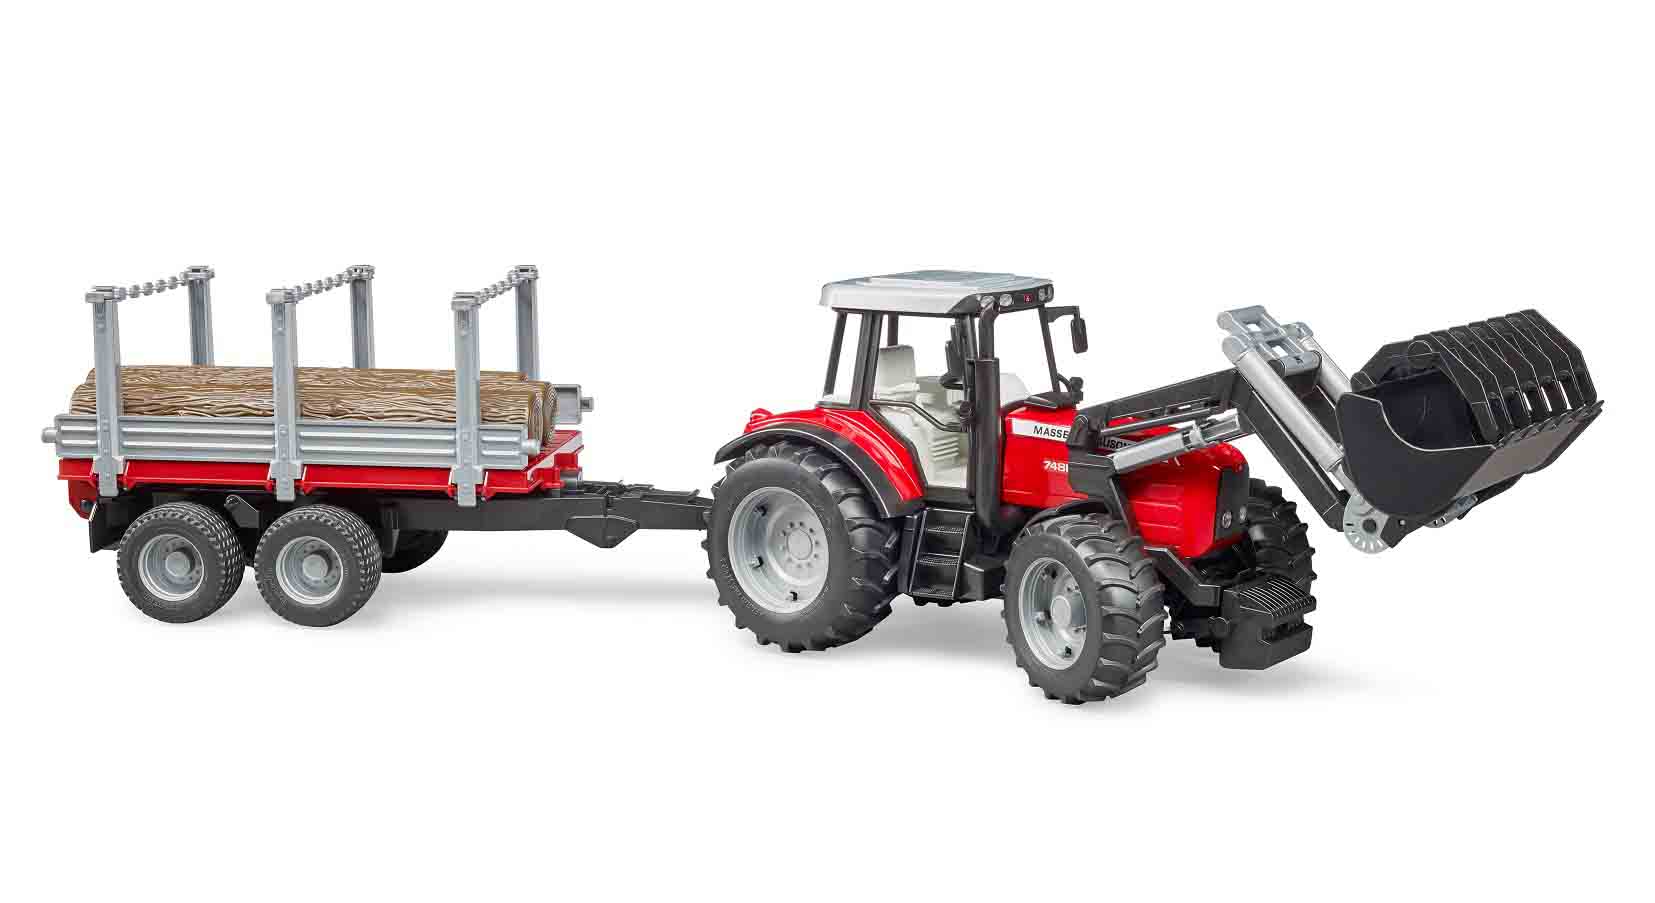 Трактор Massey Ferguson c манипулятором и прицепом BRUDER 02-046 трактор siku massey ferguson 0847 1 87 7 6 см красный